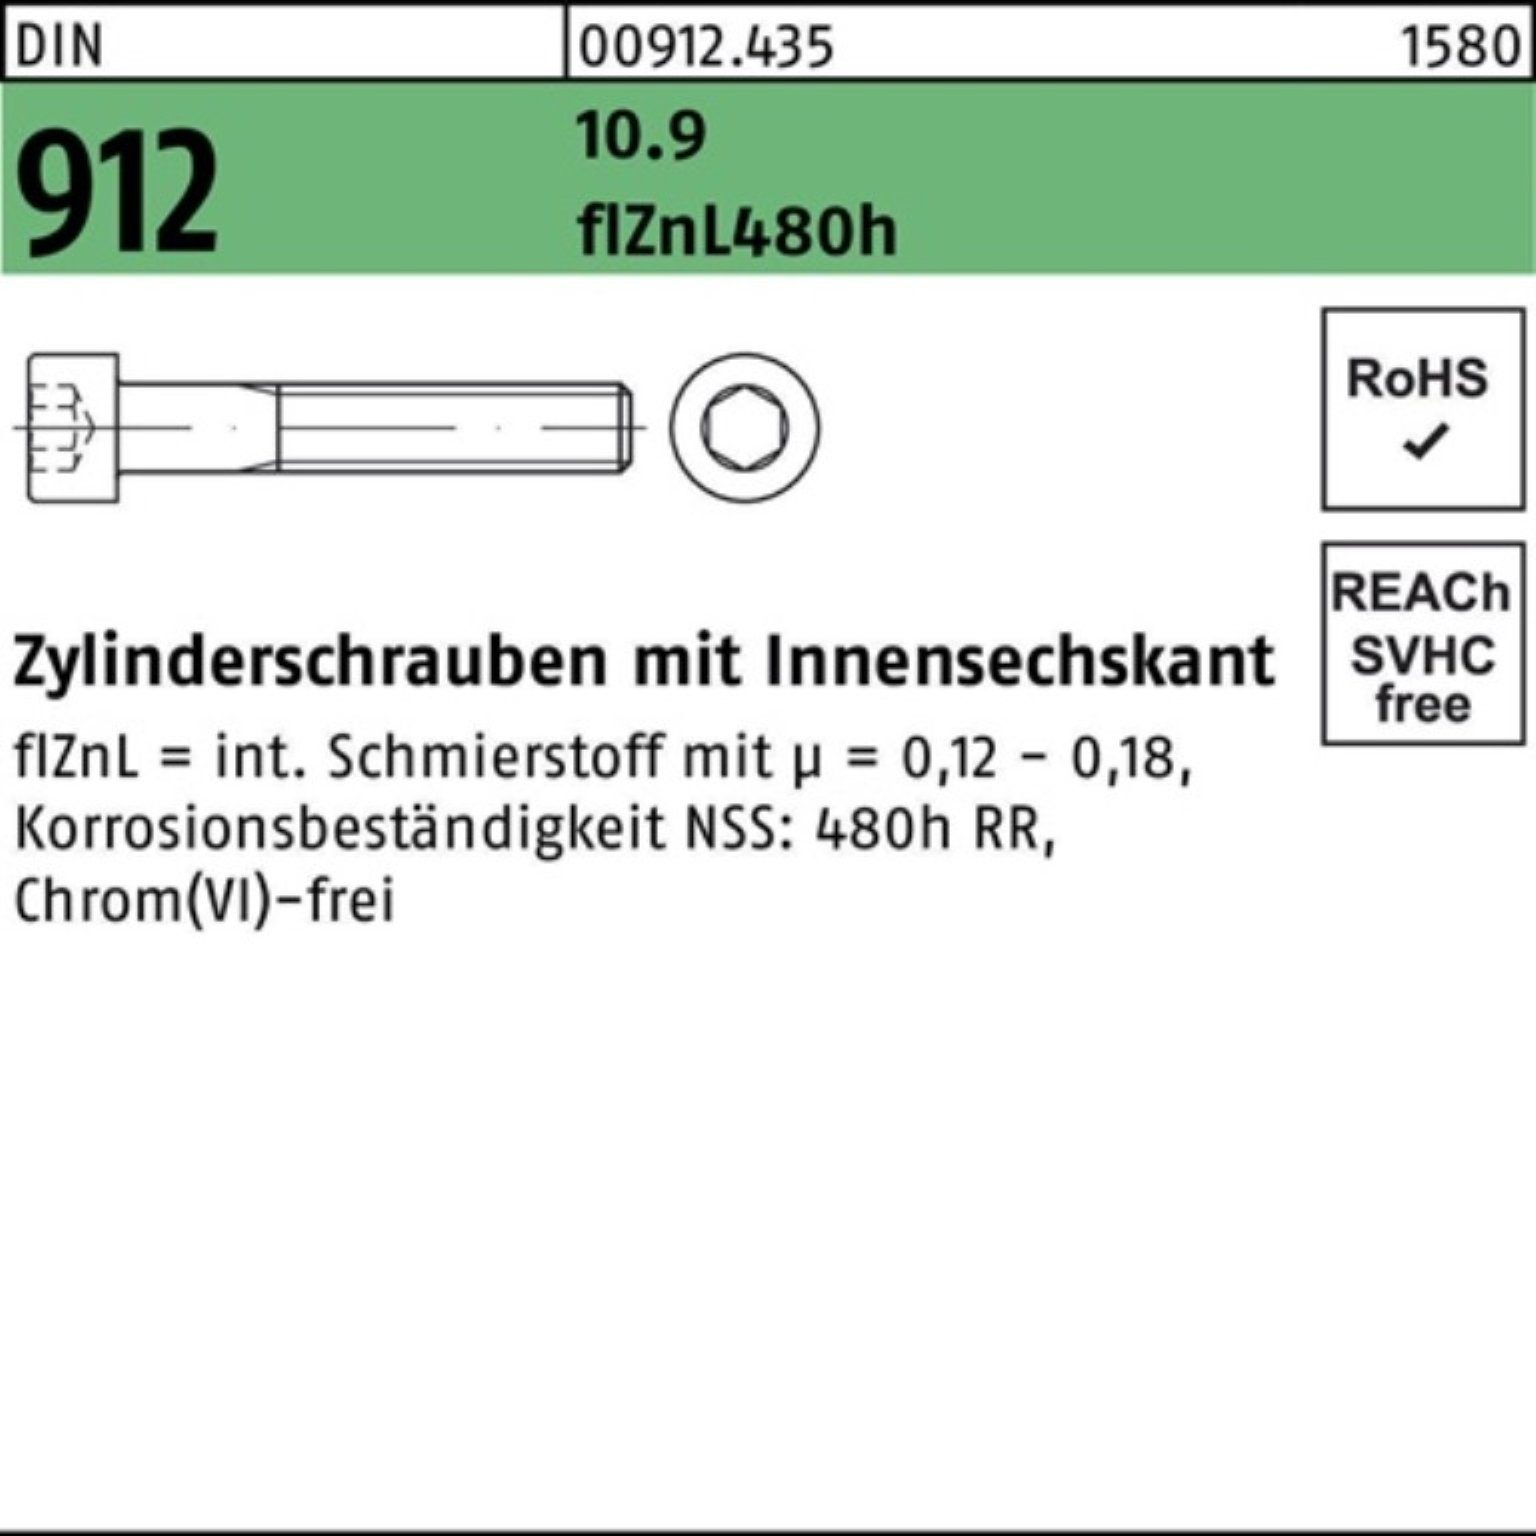 Pack Zylinderschraube Innen-6kt Zylinderschraube M20x150 Reyher flZnL/nc/x 100er 10.9 912 DIN